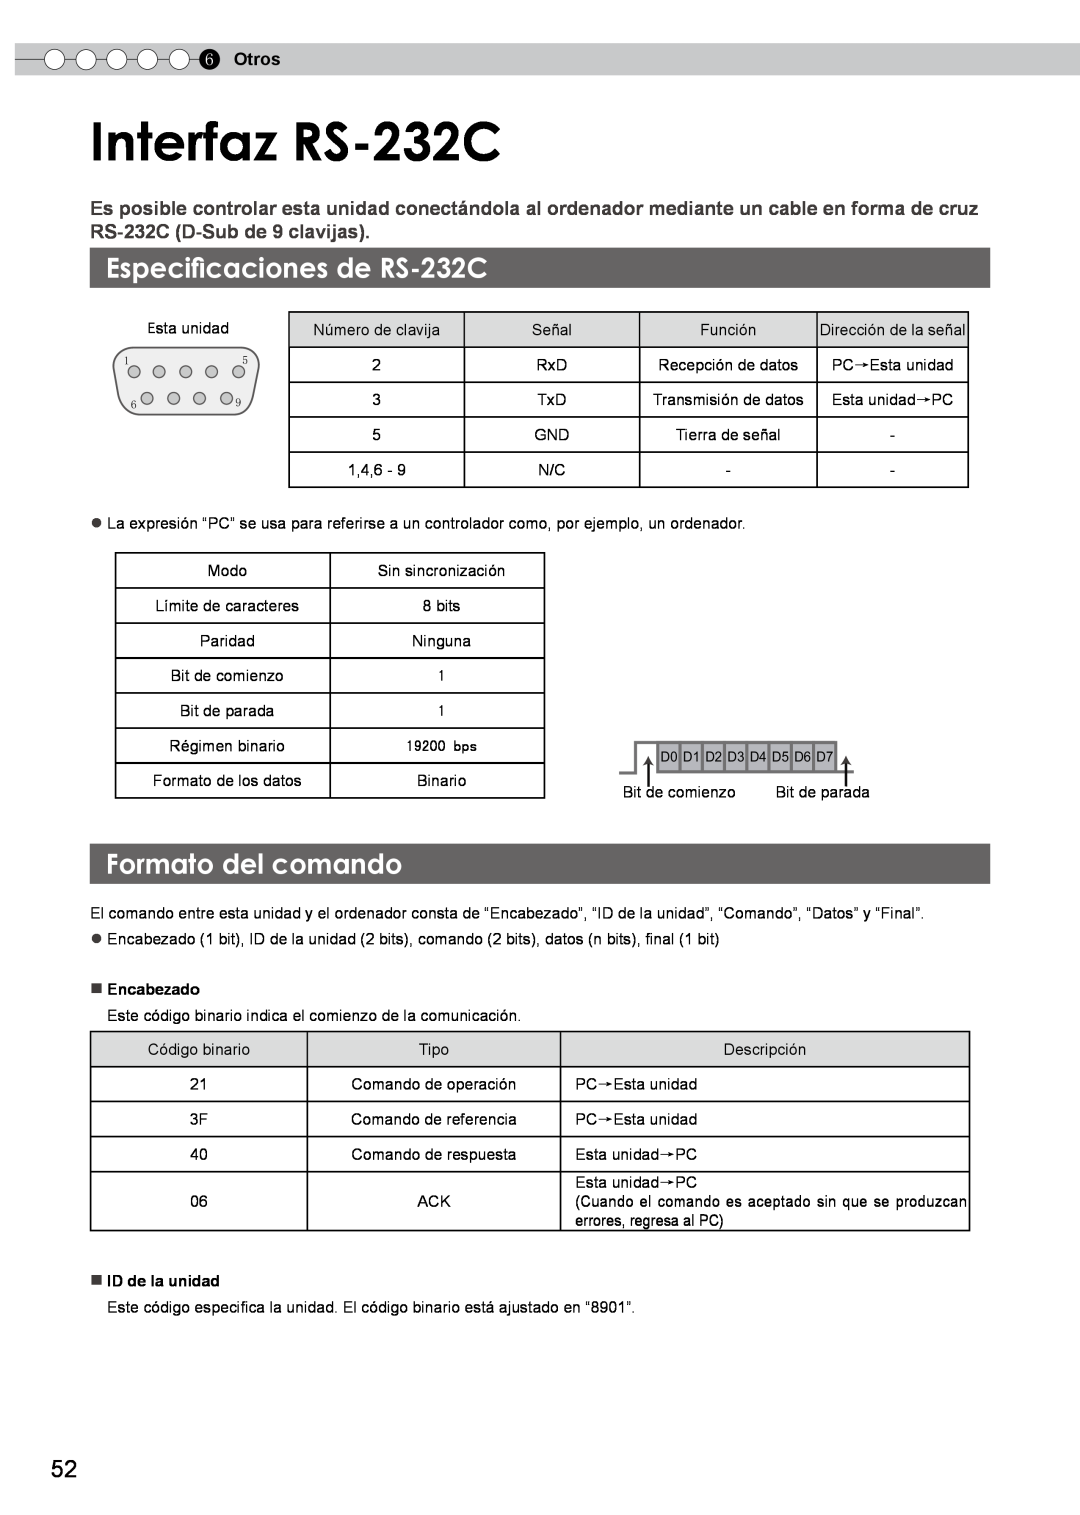 JVC PB006596599-0 manual Interfaz RS-232C, Especificaciones de RS-232C, Formato del comando, Otros 